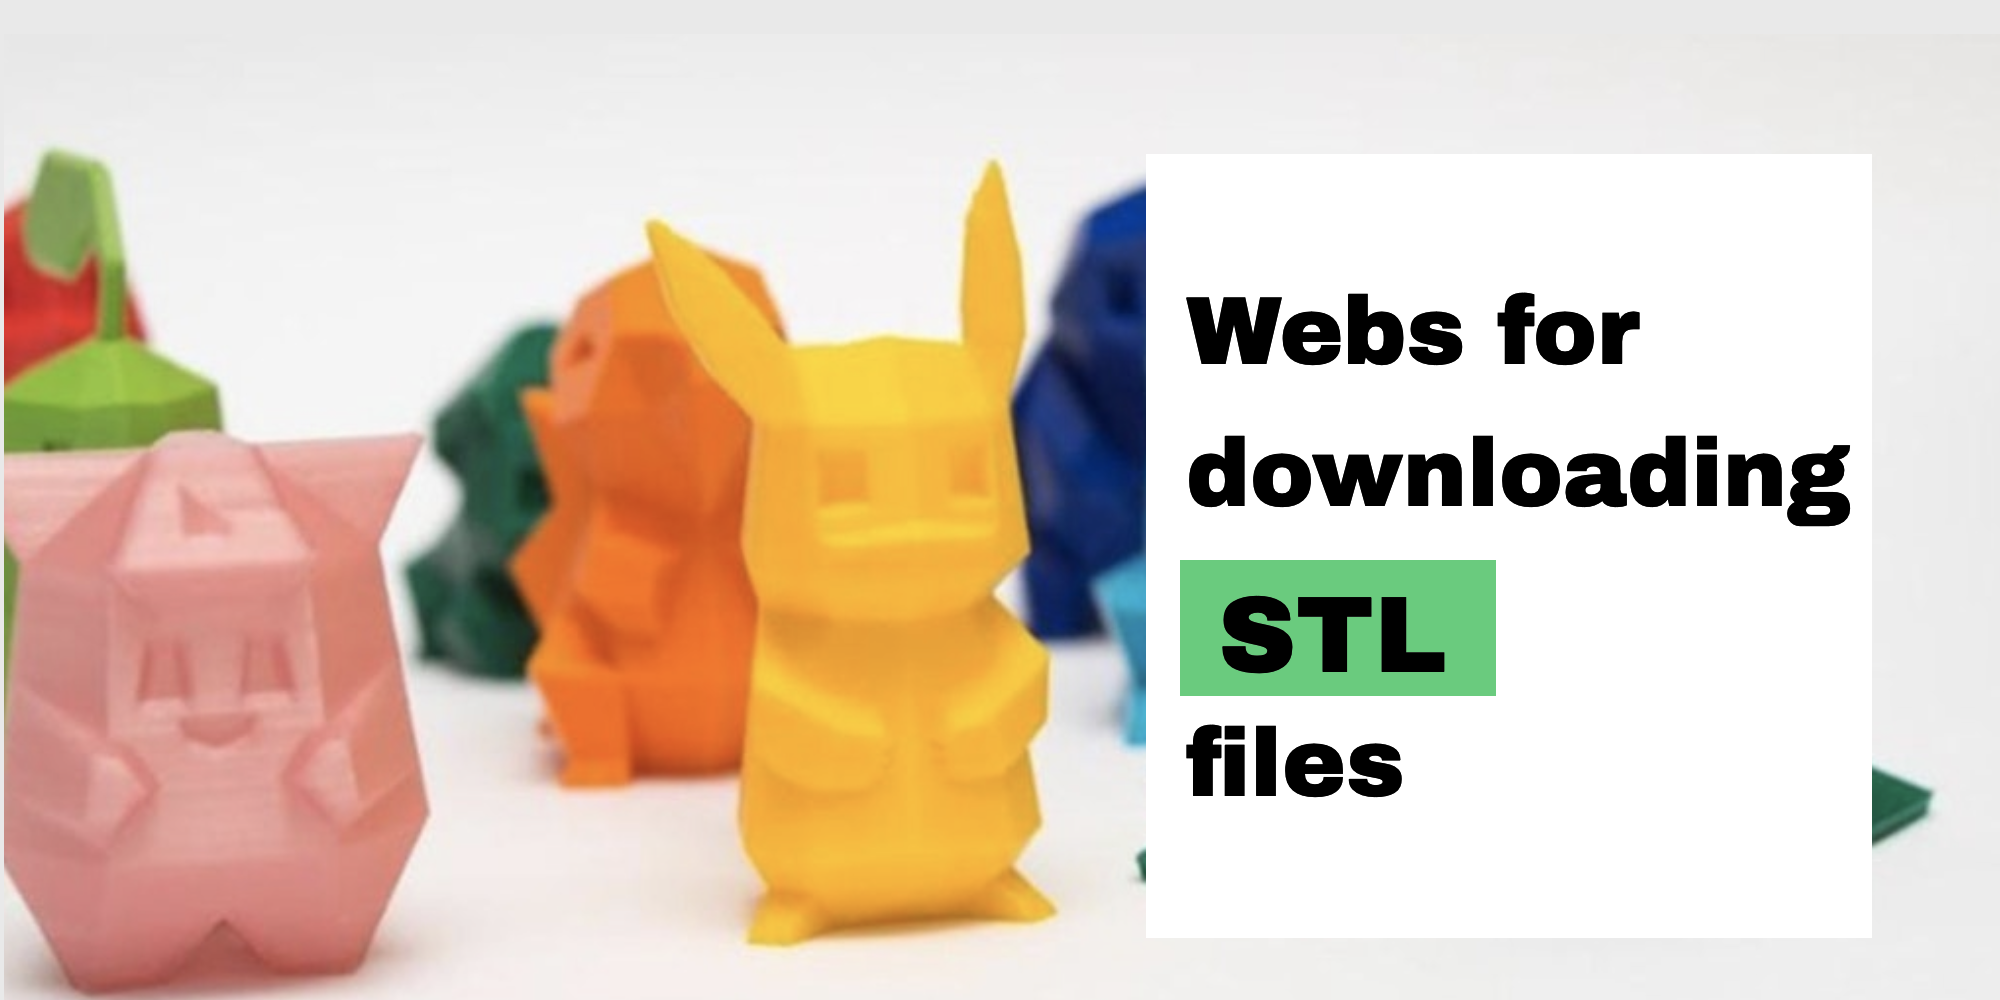 Webs for downloading STL files